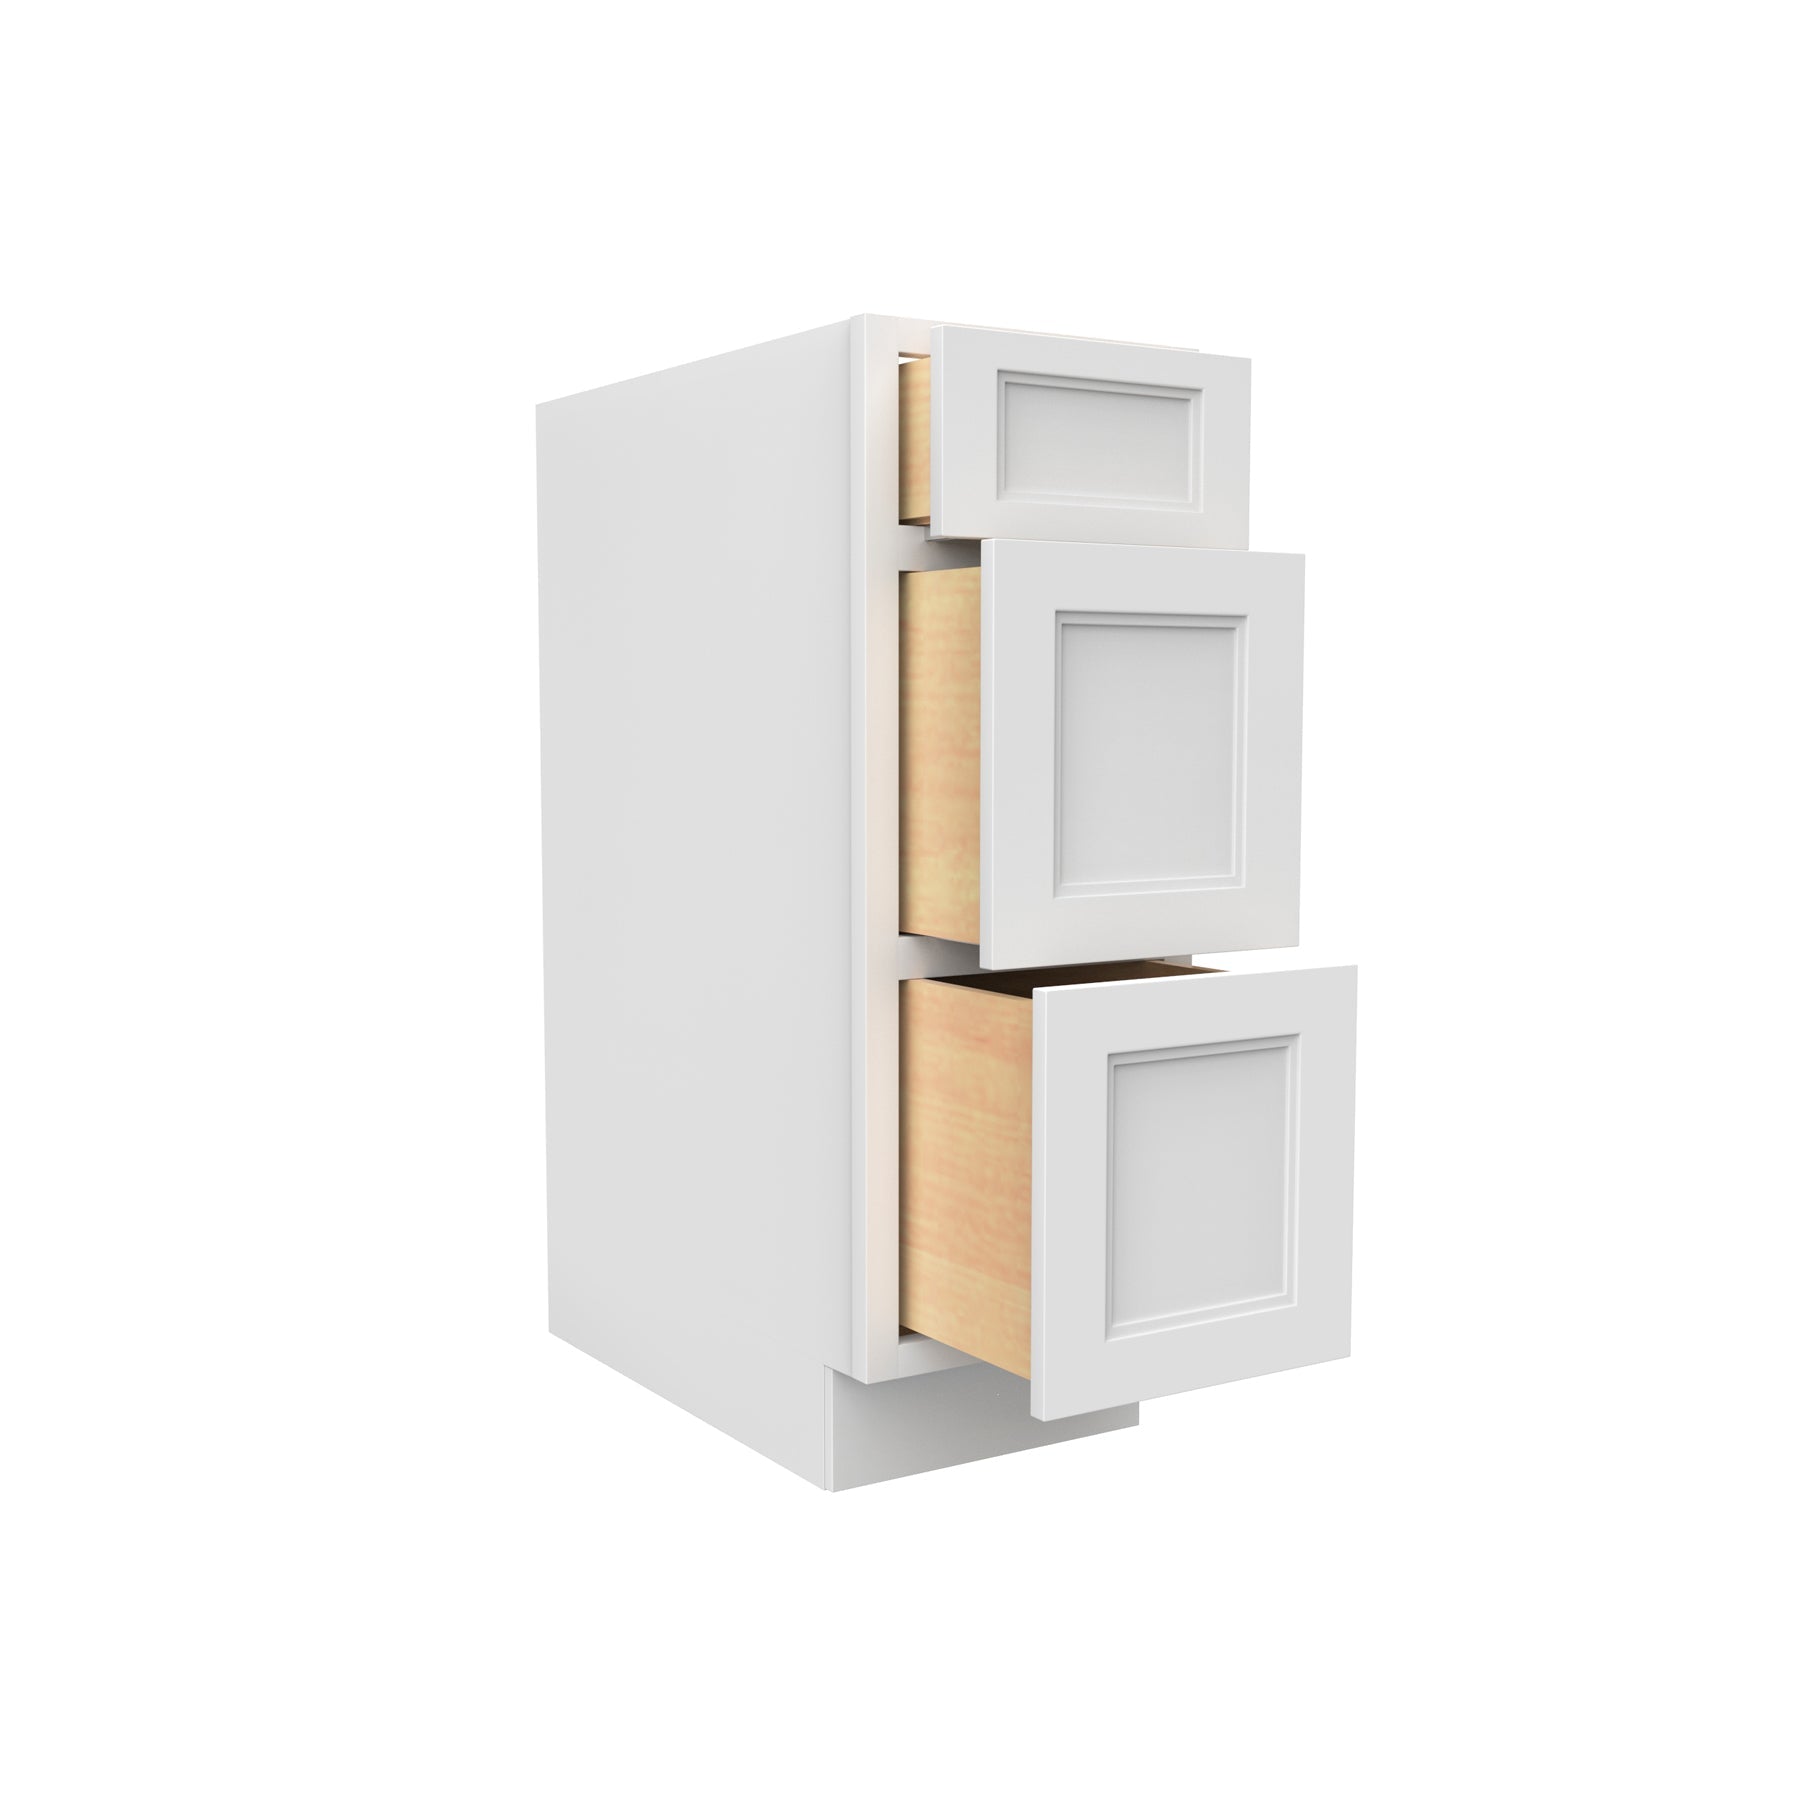 RTA - Fashion White - 3 Drawer Base Cabinet | 12"W x 34.5"H x 24"D